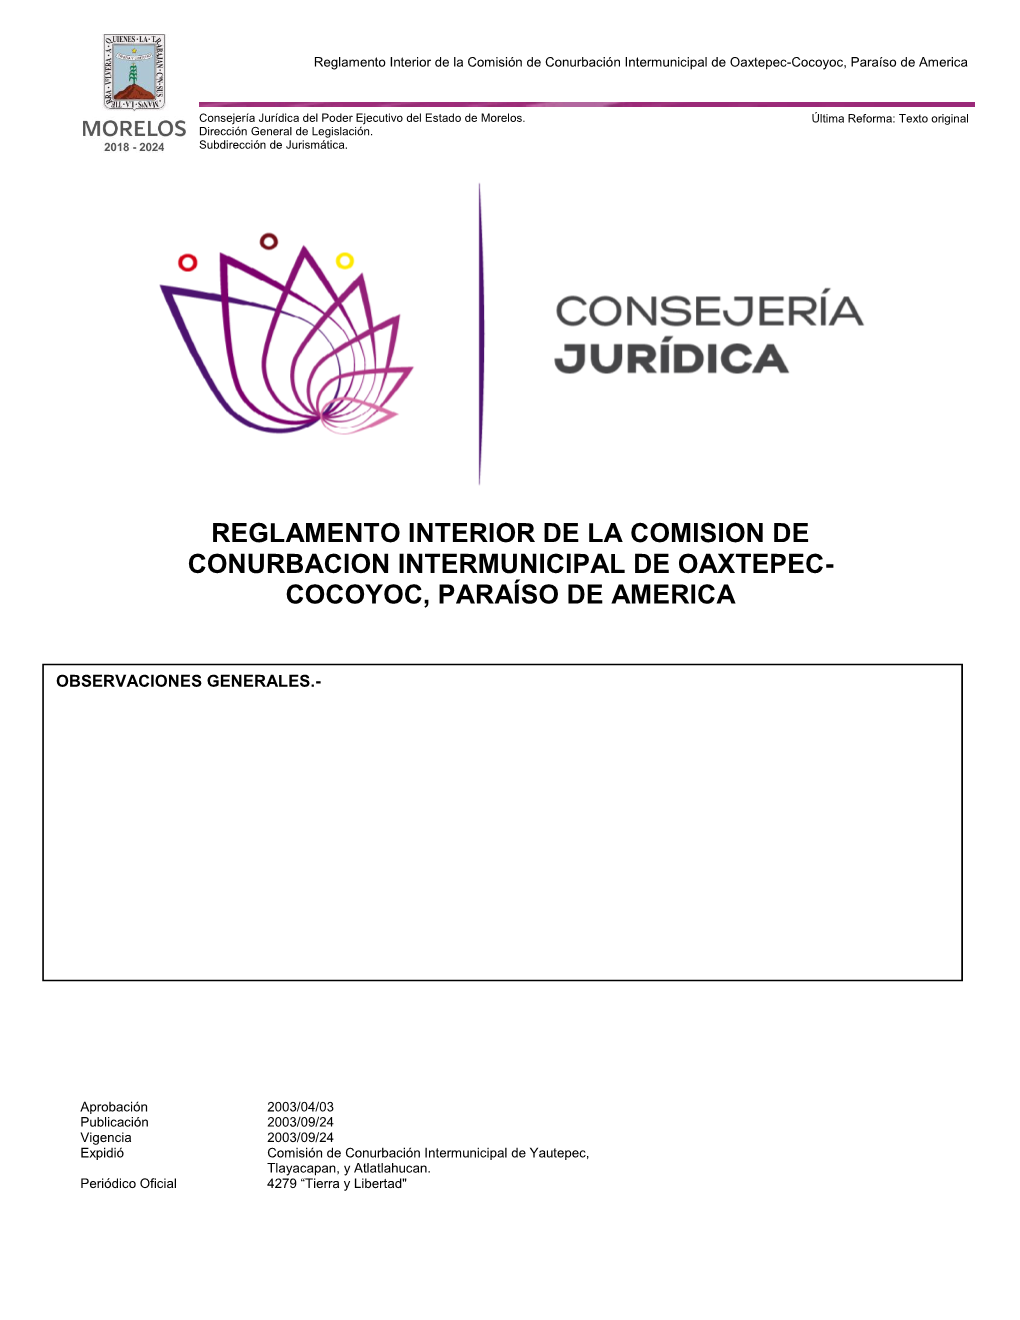 Reglamento Interior De La Comision De Conurbacion Intermunicipal De Oaxtepec- Cocoyoc, Paraíso De America